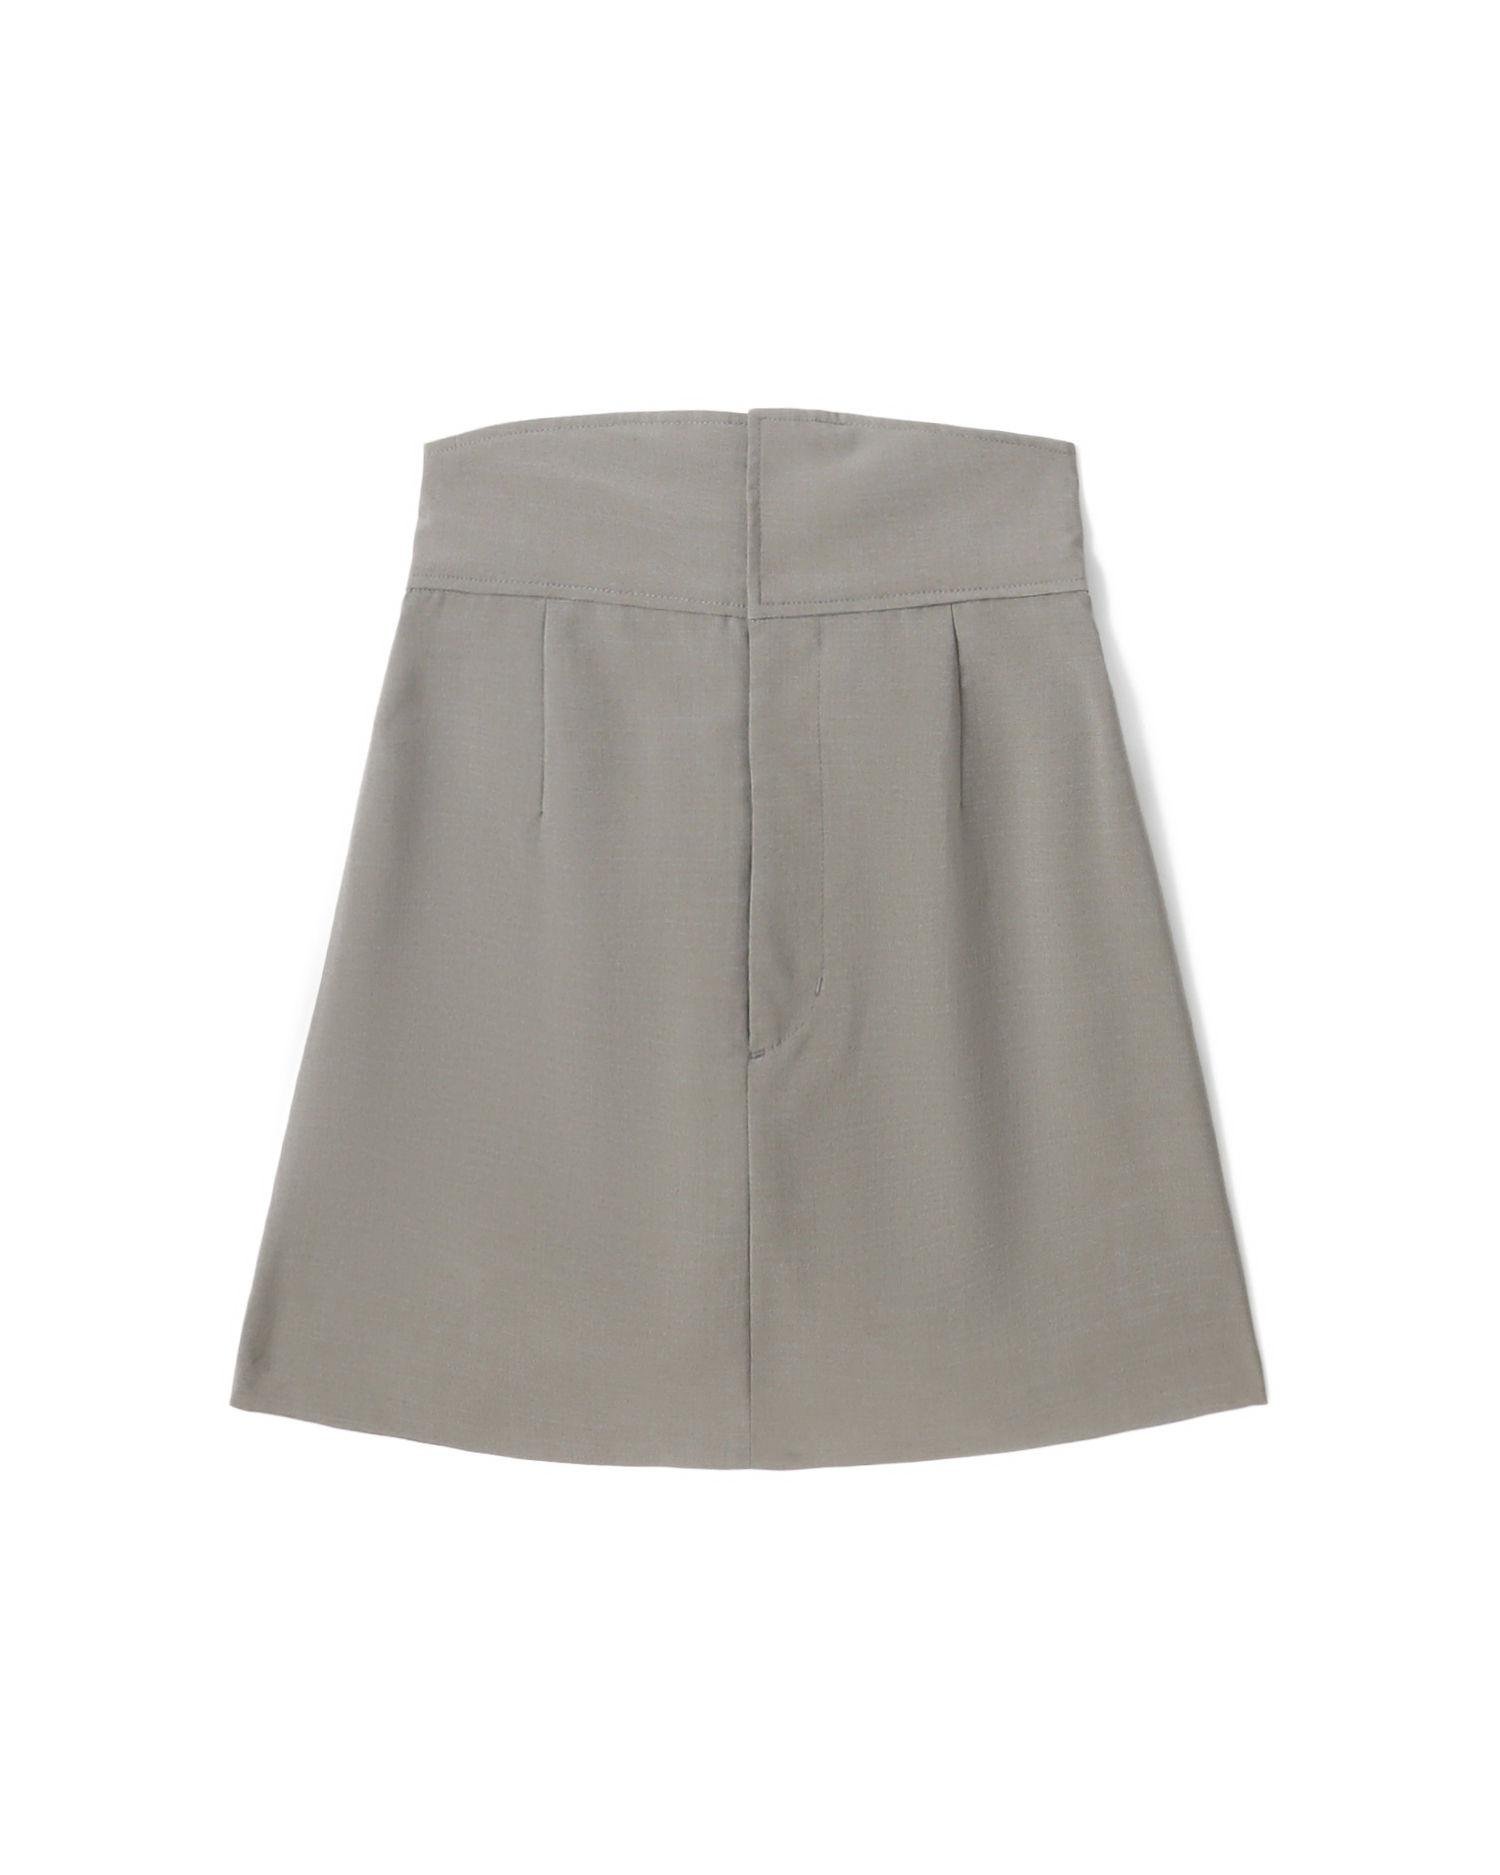 High waist A-line skirt by MURUA